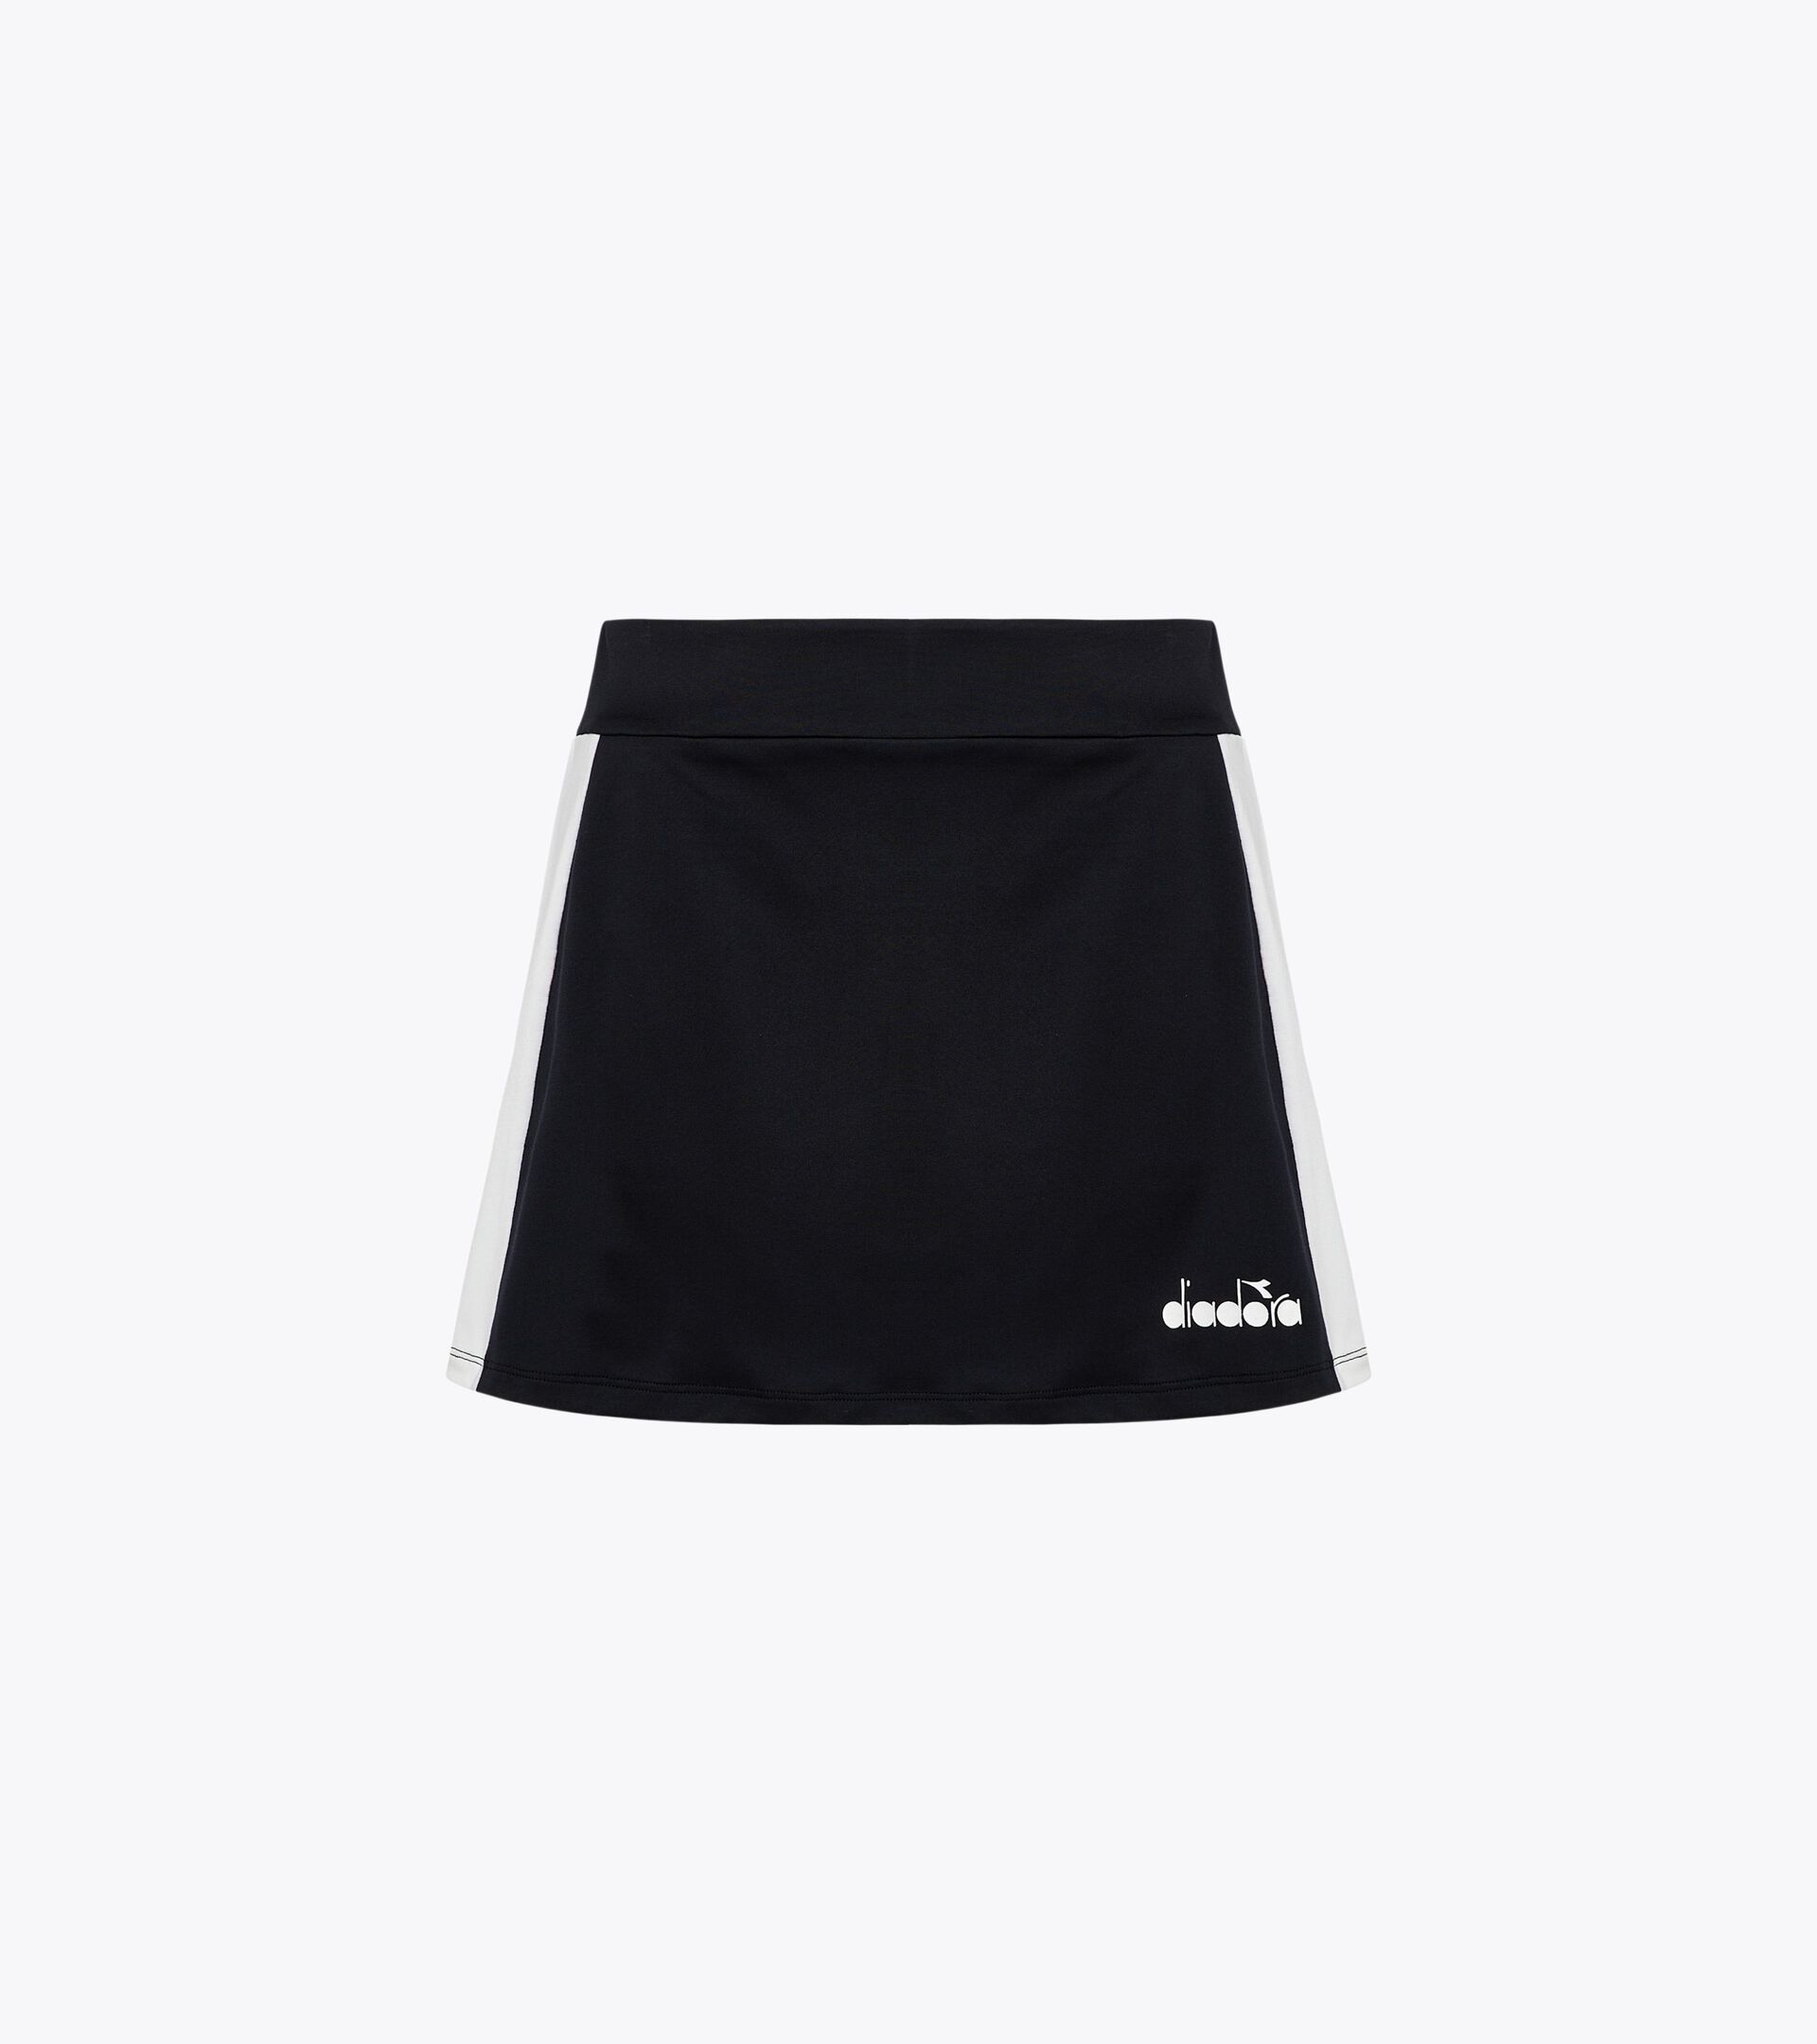 Tennis skirt - Women L. CORE SKIRT BLACK - Diadora